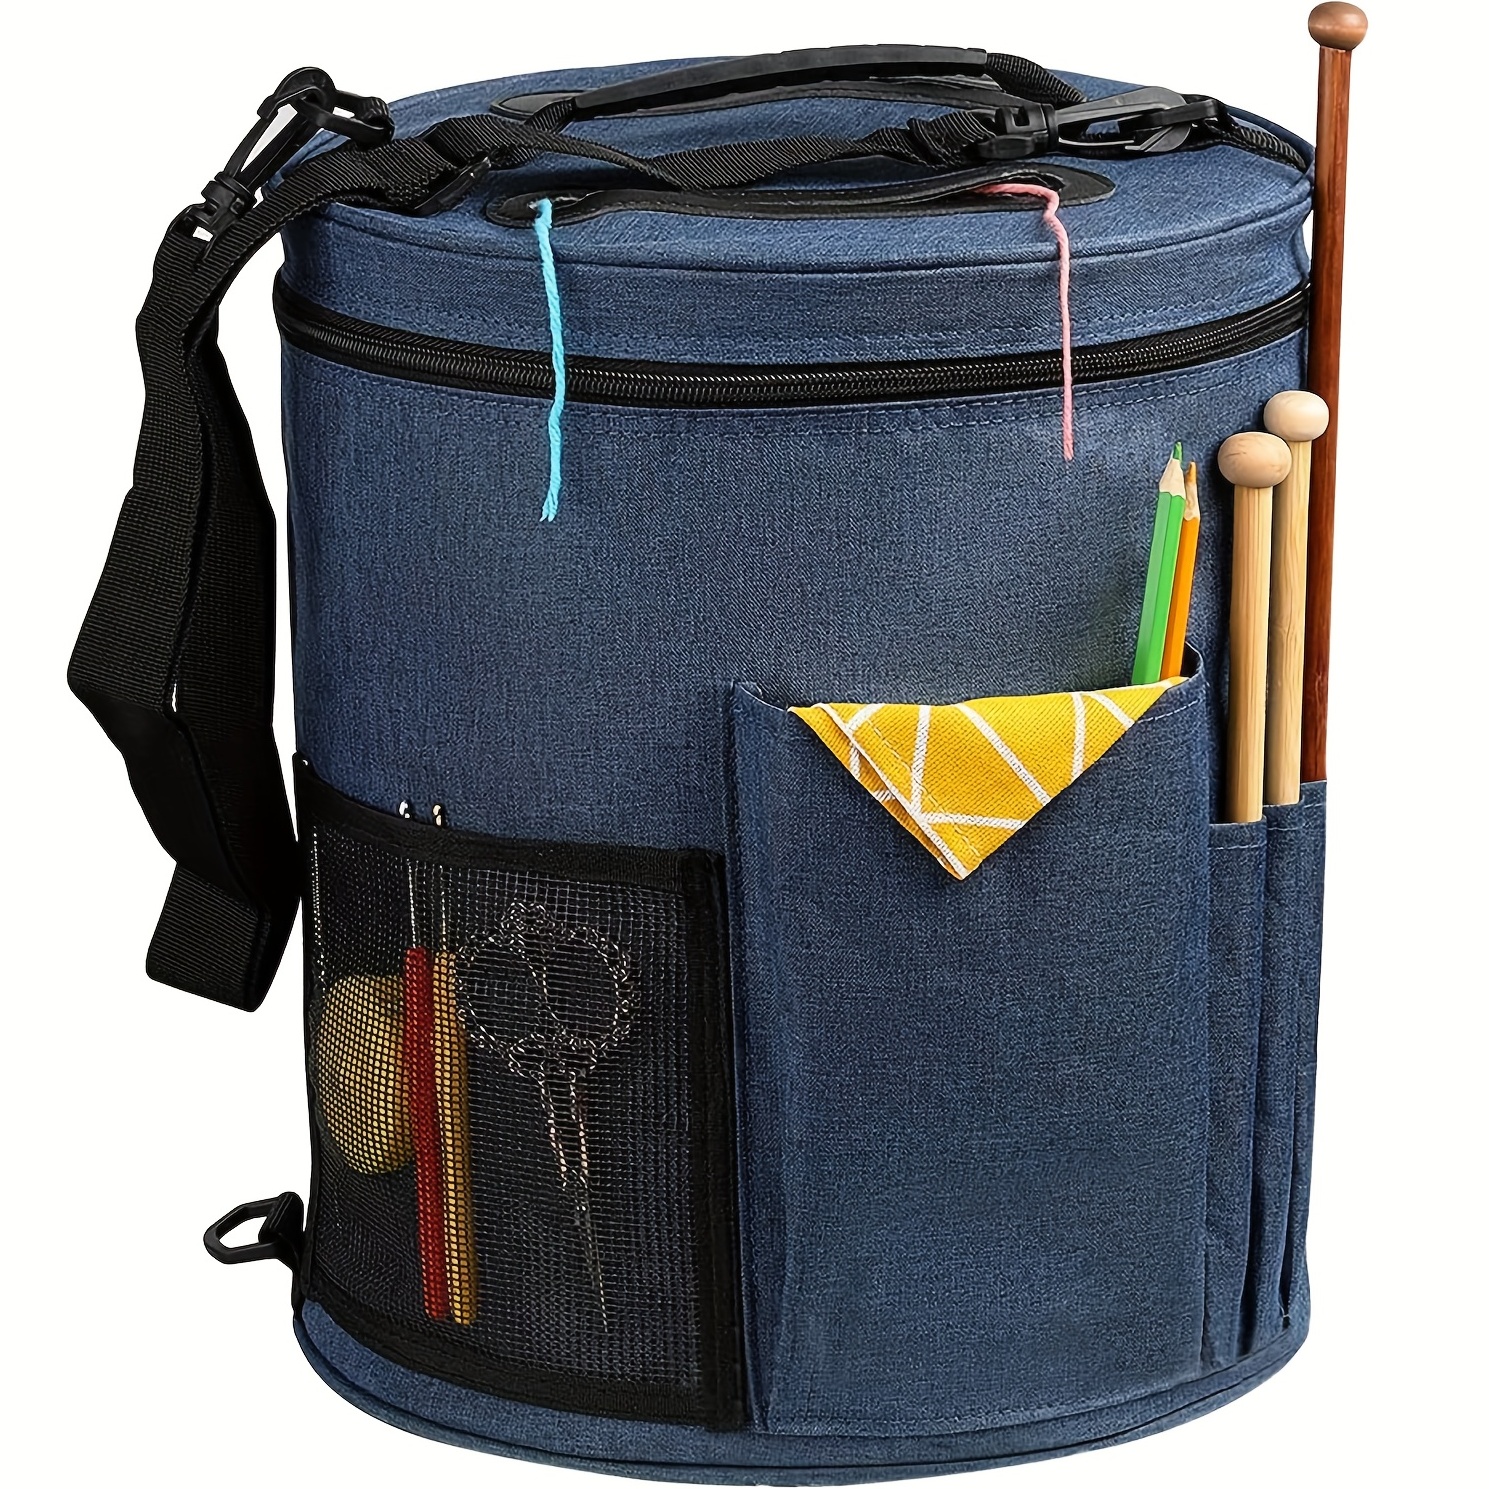 1pcのニットバッグ、DIYヤーンオーガナイザートートバッグ、糸、プロジェクト、編み針、かぎ針、マニュアル、その他のアクセサリーを持ち運ぶためのポータブルストレージバッグ（ブルー）